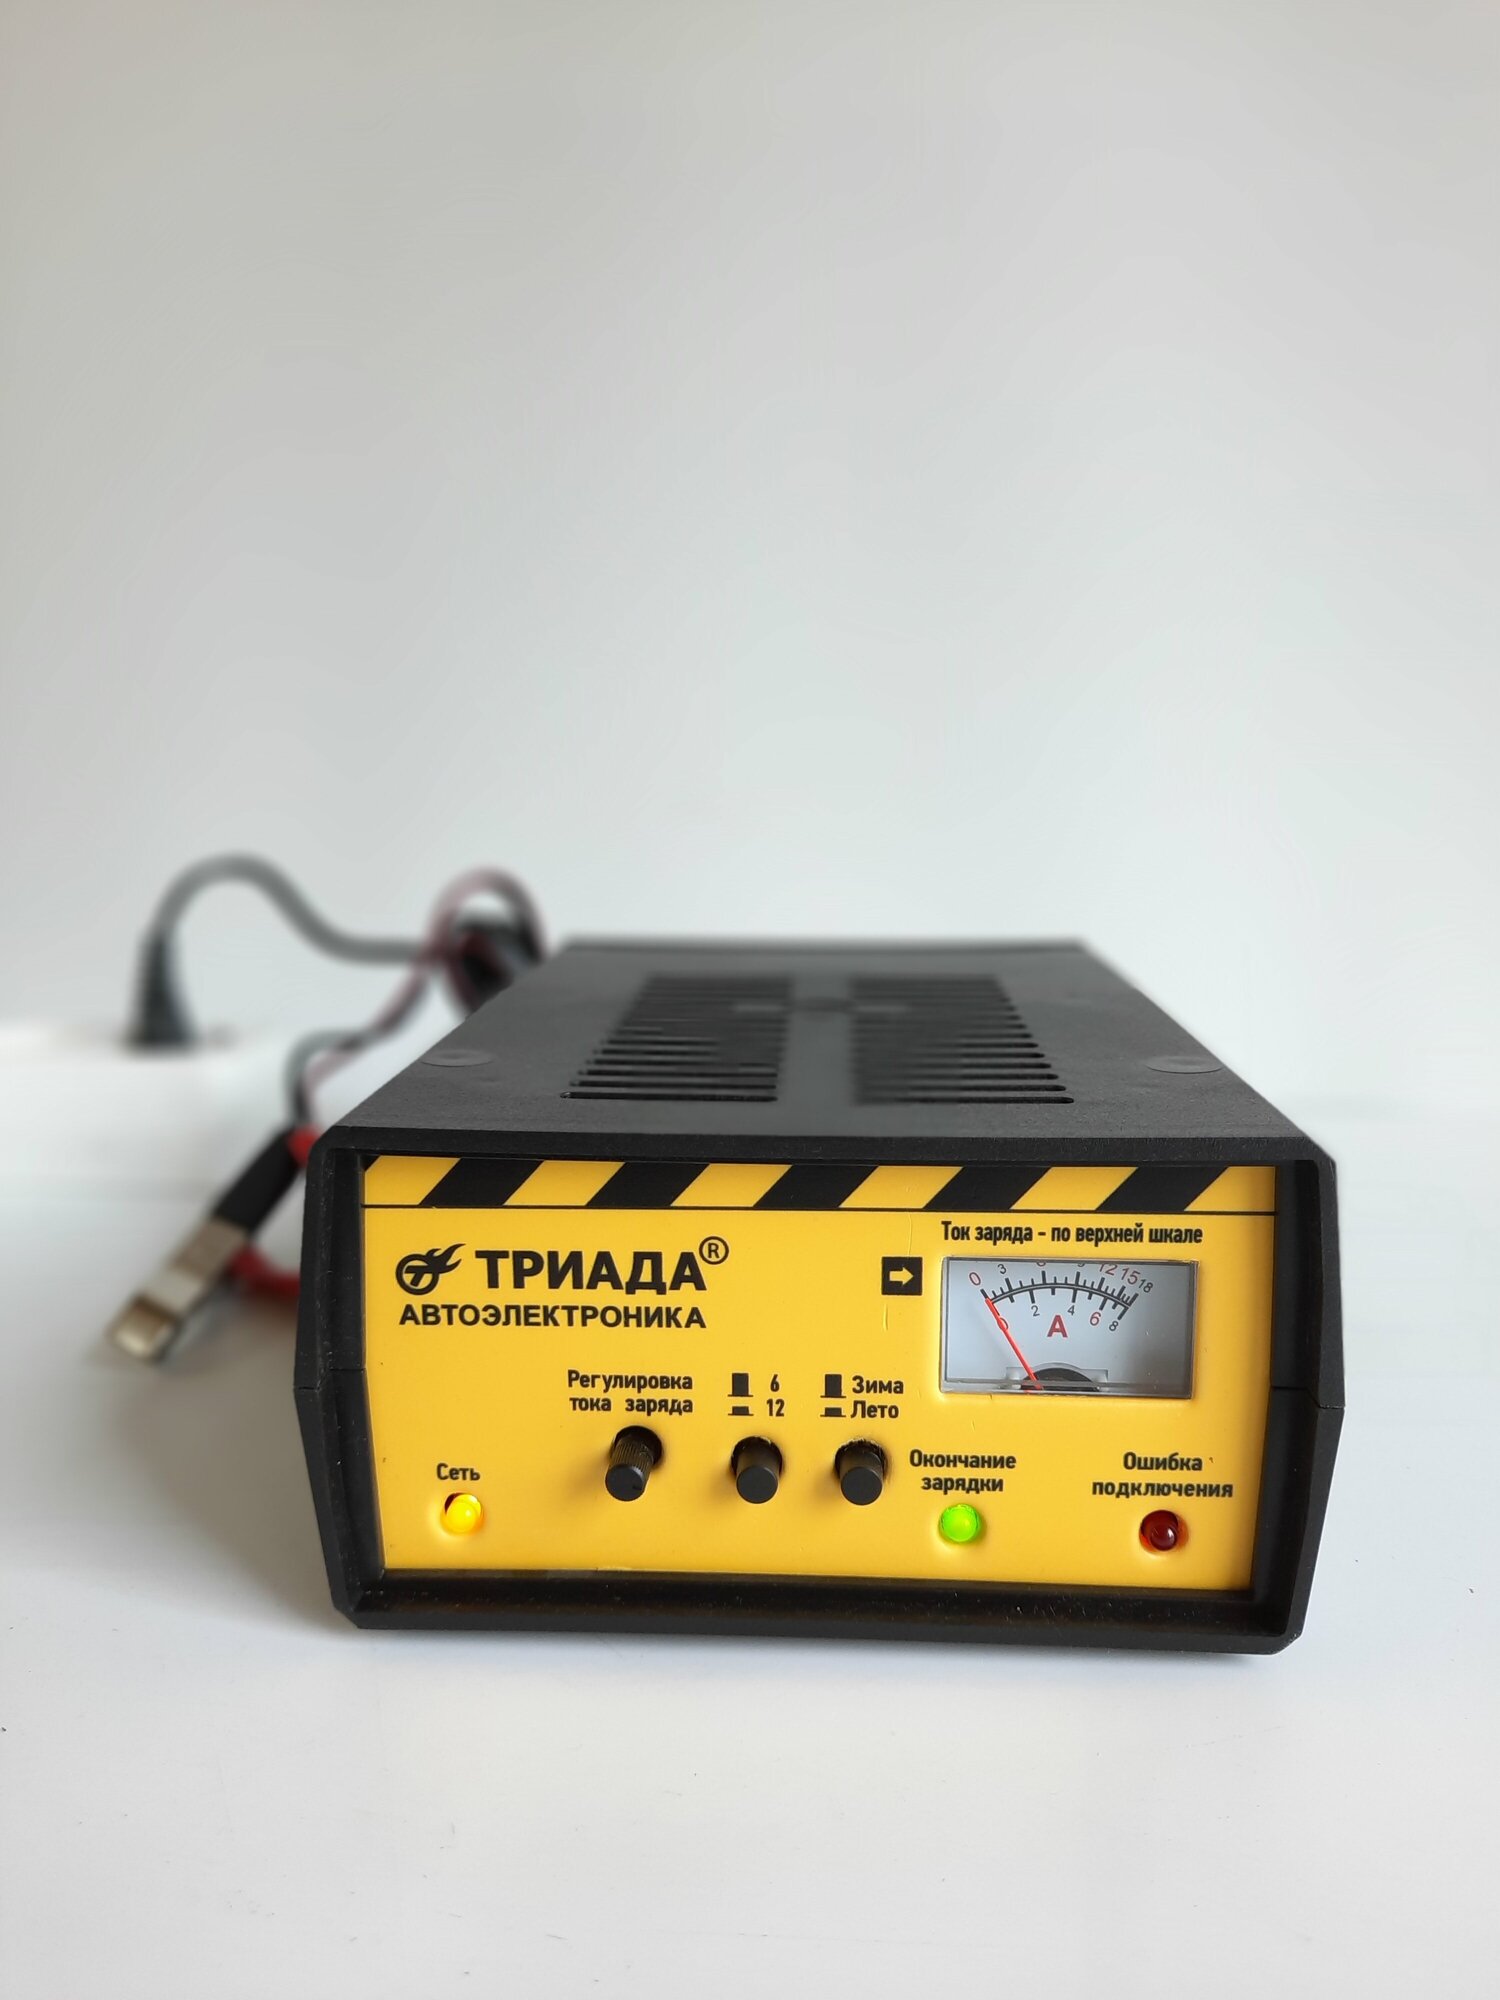 Профессиональное импульсное зарядное устройство "Триада-40" 2 режима работы: 6/12 А зима/лето